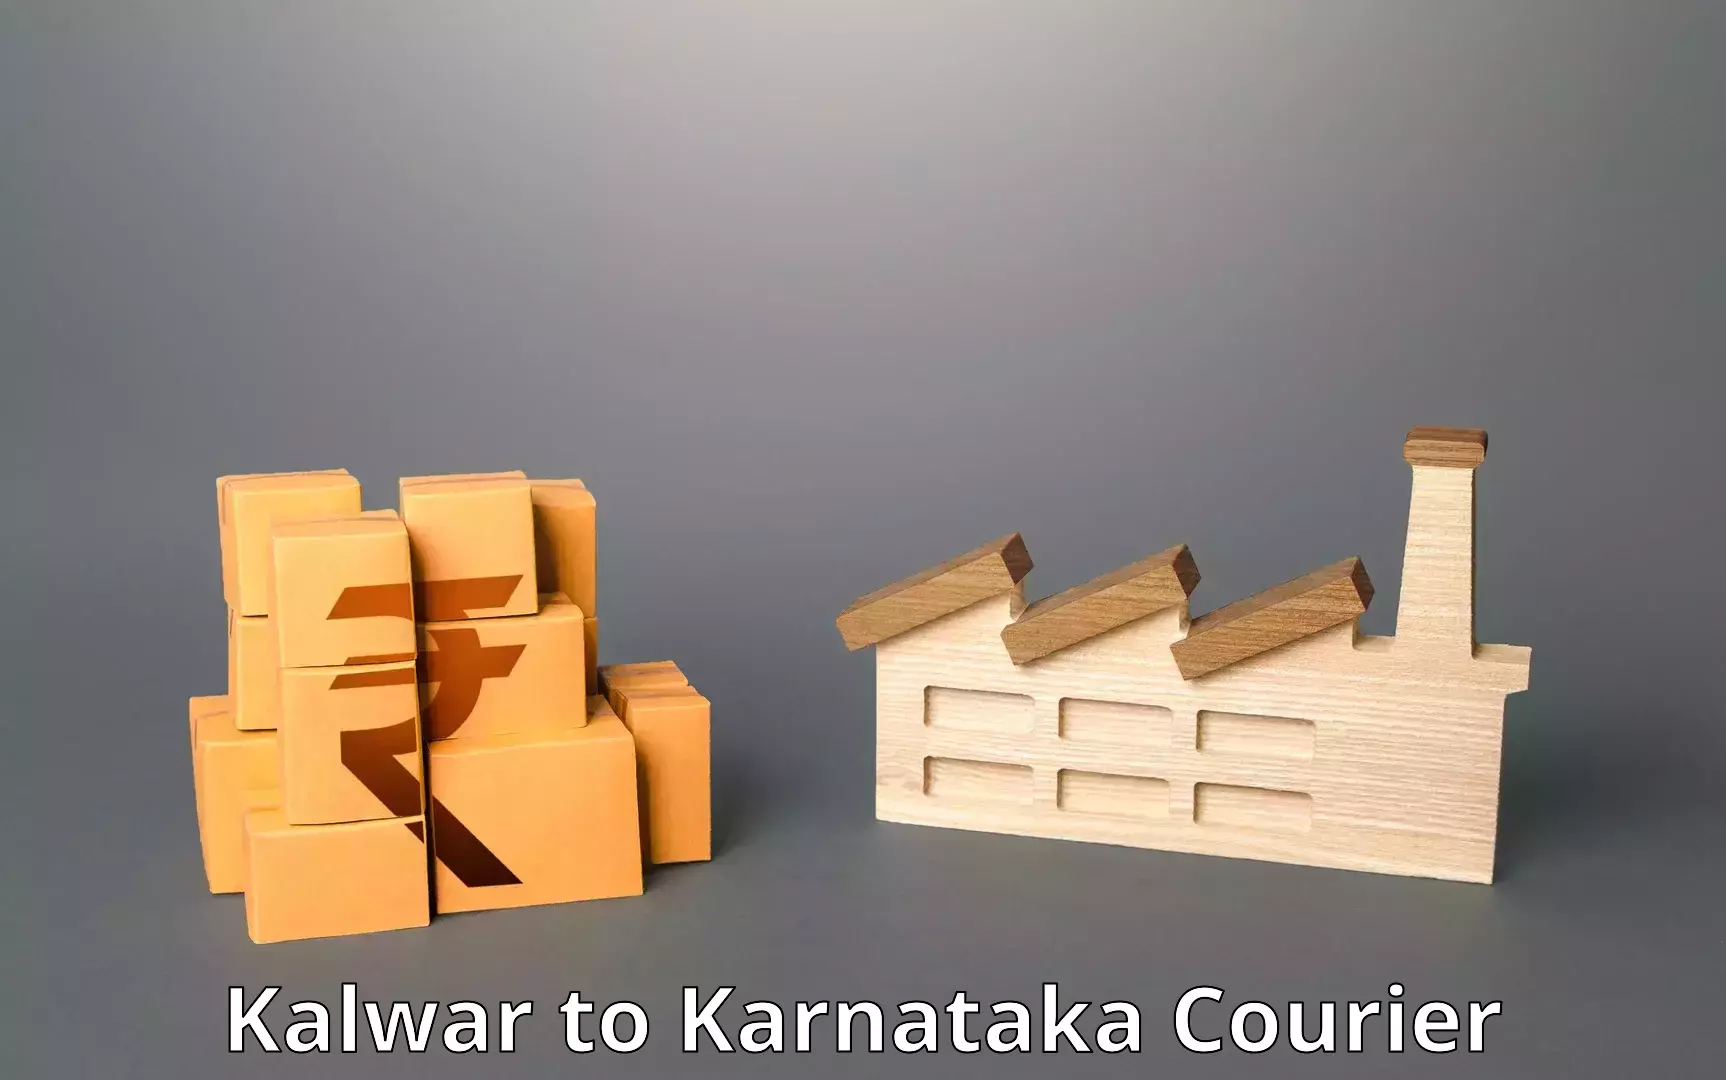 Professional courier handling in Kalwar to Karnataka